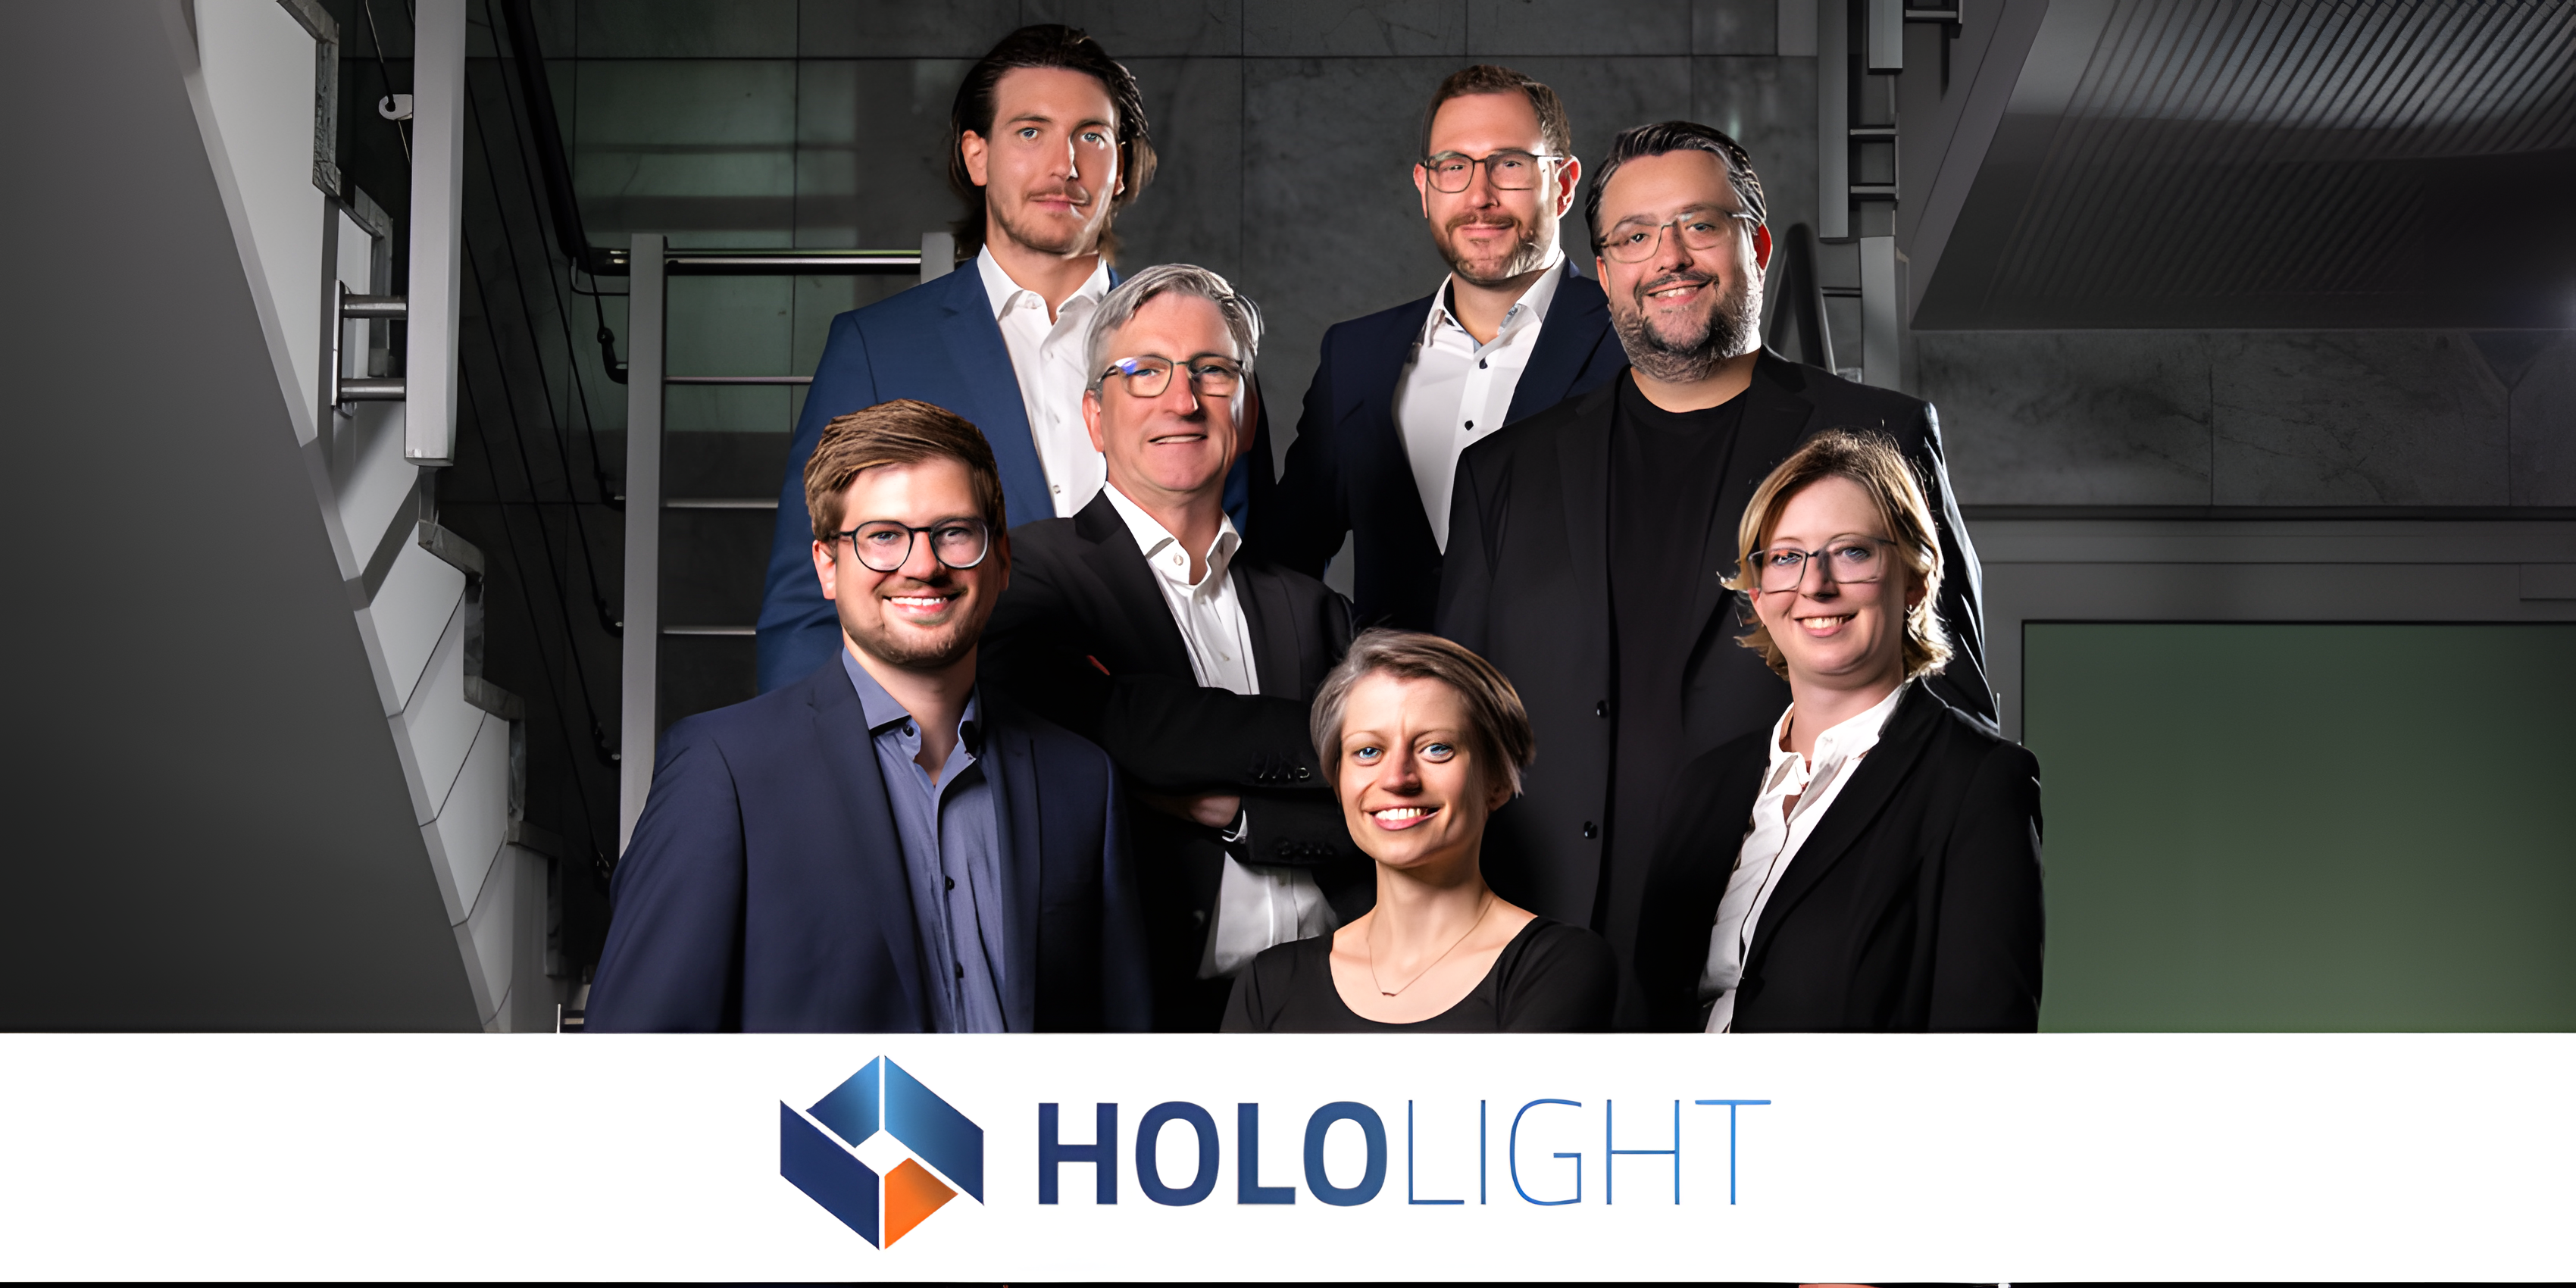 HoloLight obtiene 12 millones de dólares de financiación en pleno impulso de la Realidad Extendida